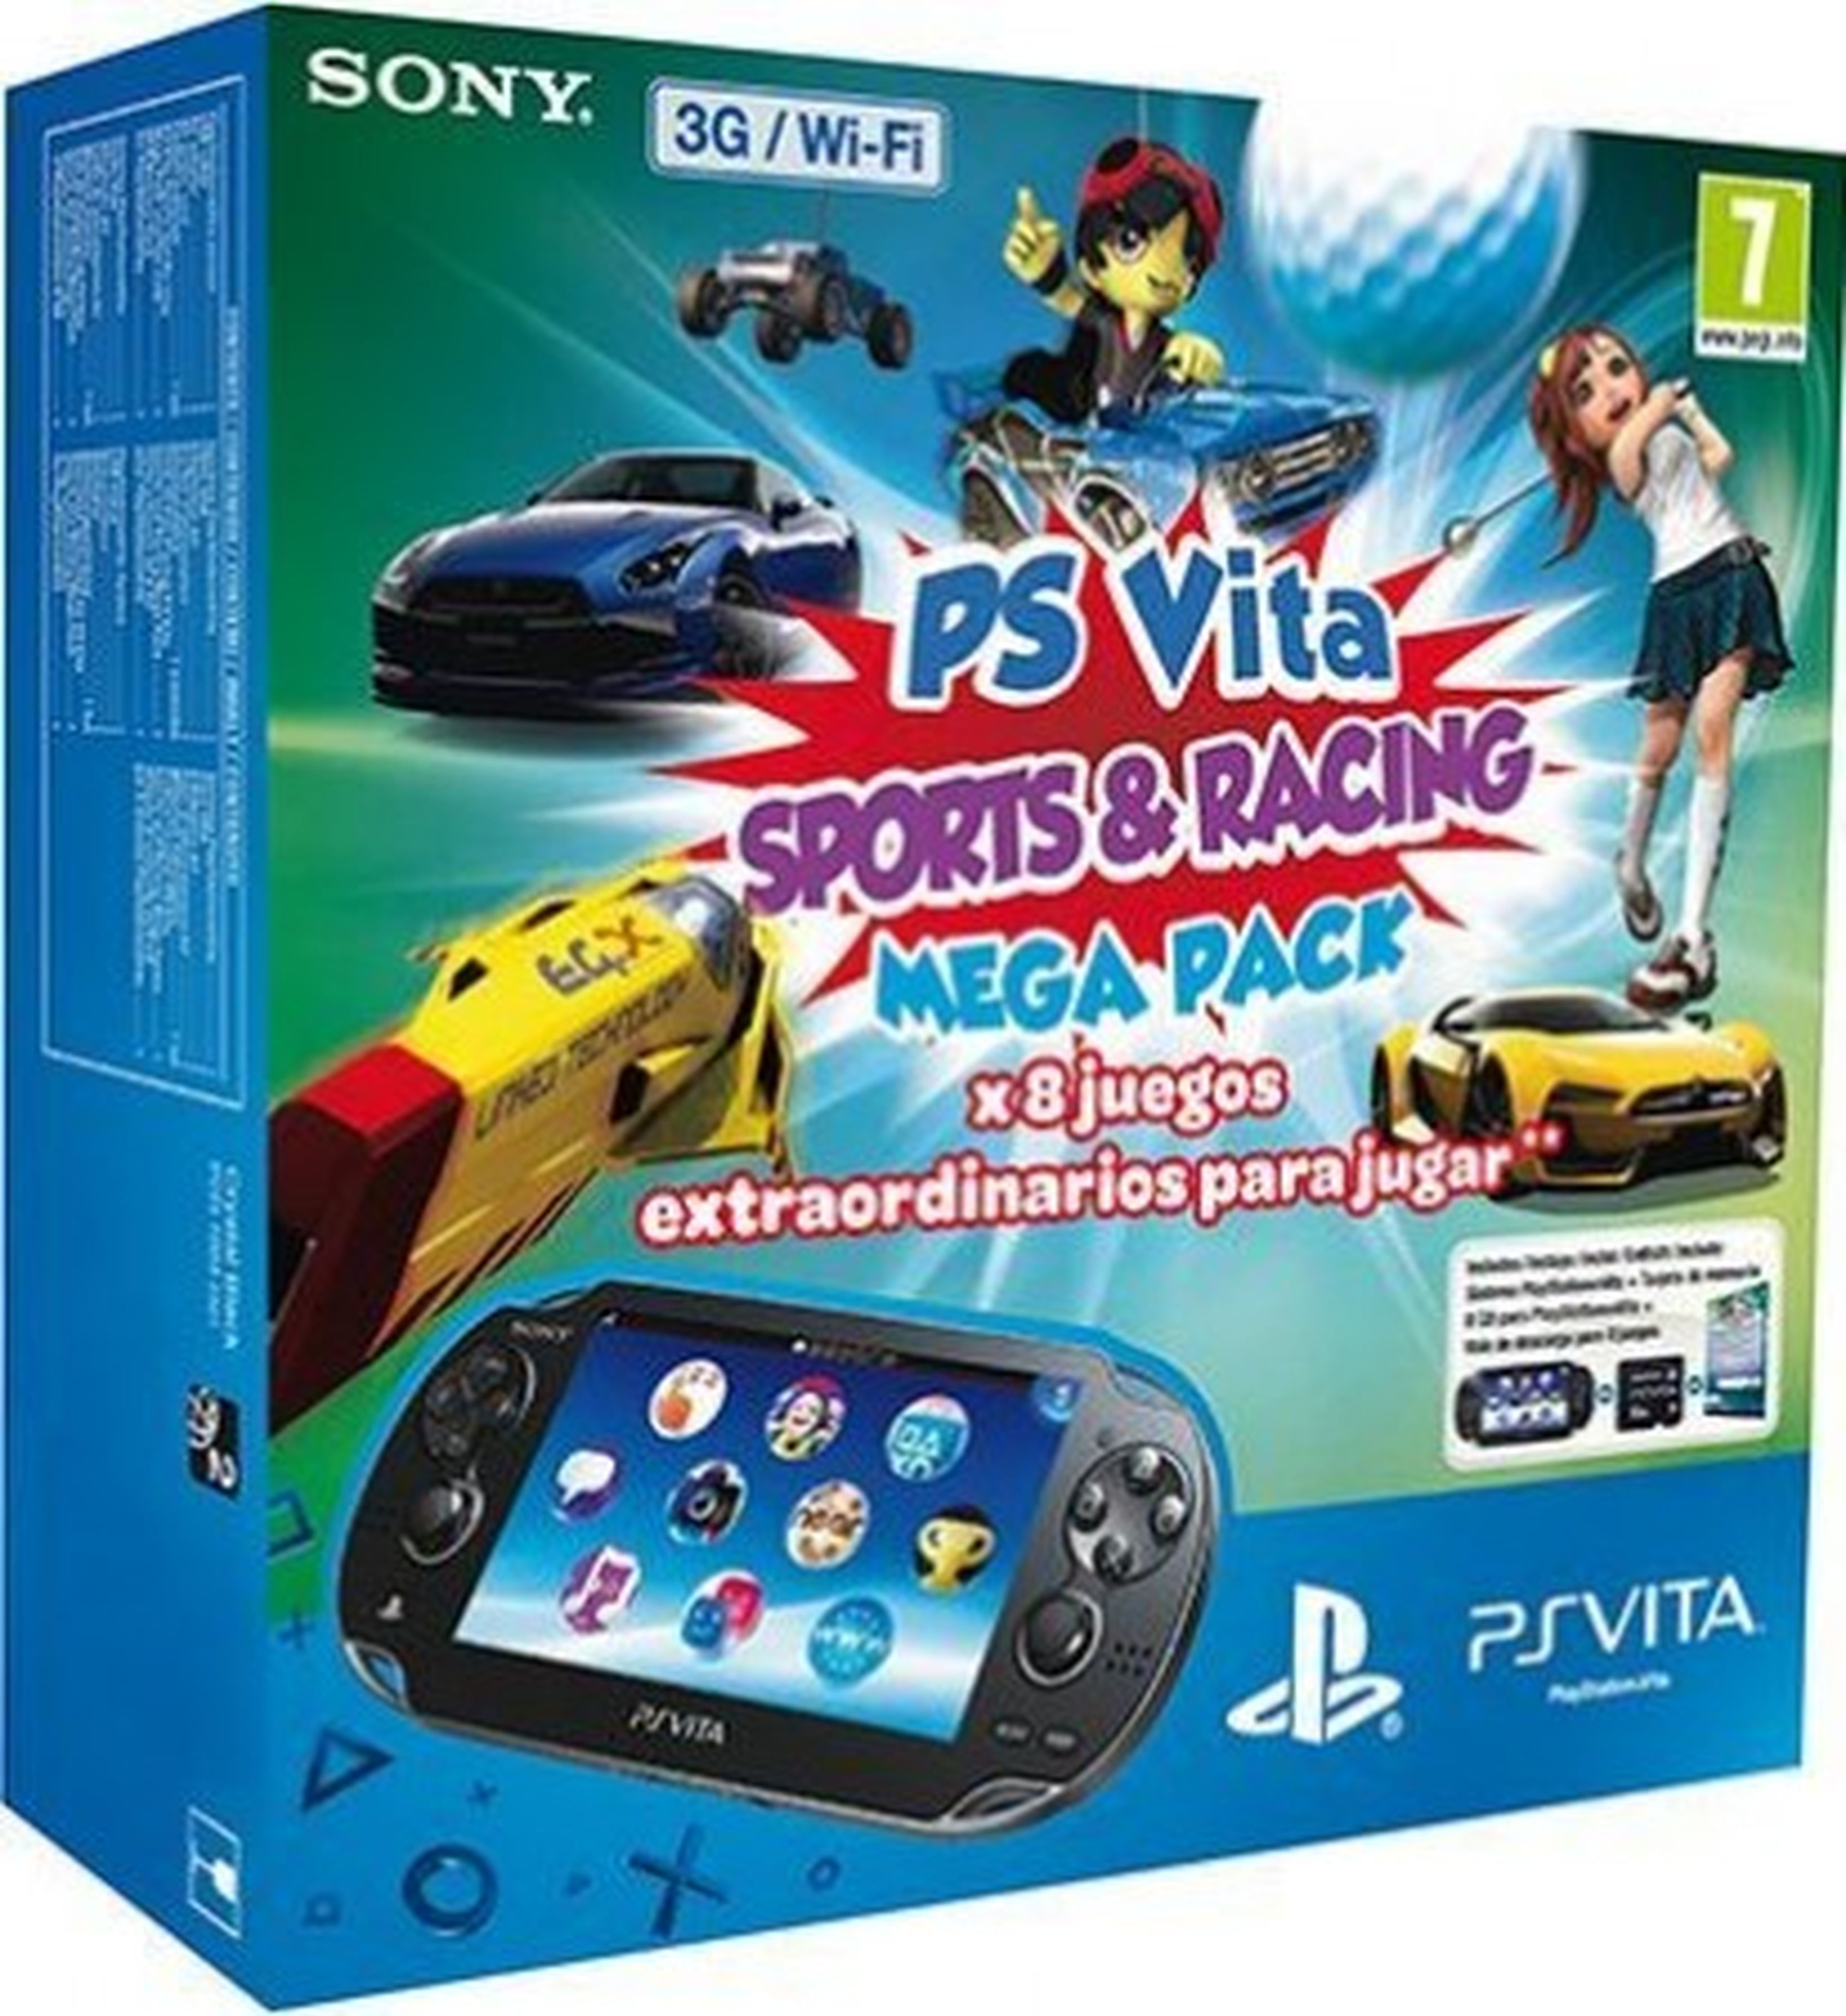 Nuevo pack de PS Vita con 8 juegos